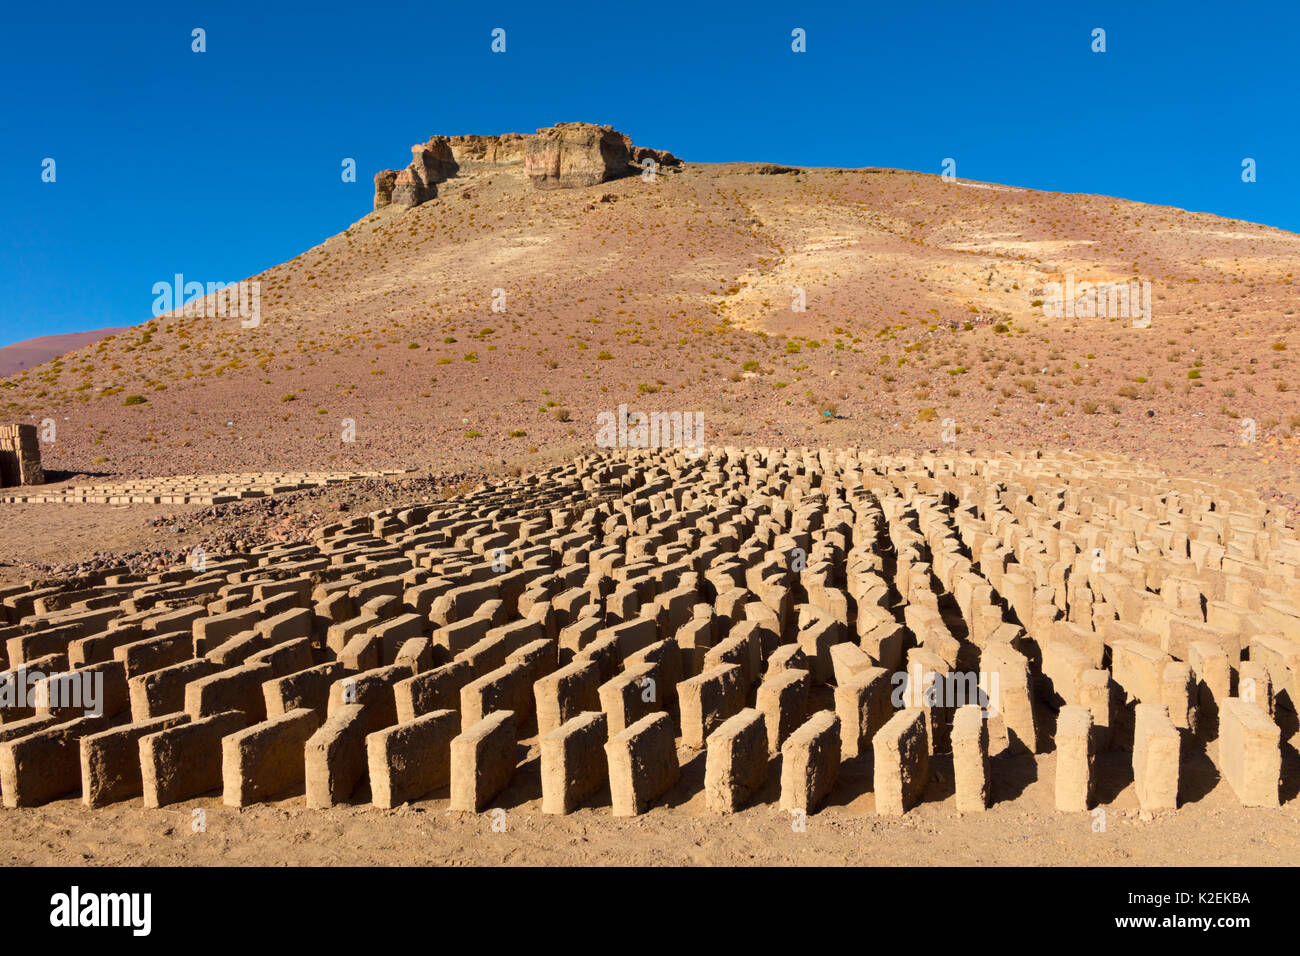 Adobe mattoni di fango ad asciugare al sole. Bolivia. Foto Stock